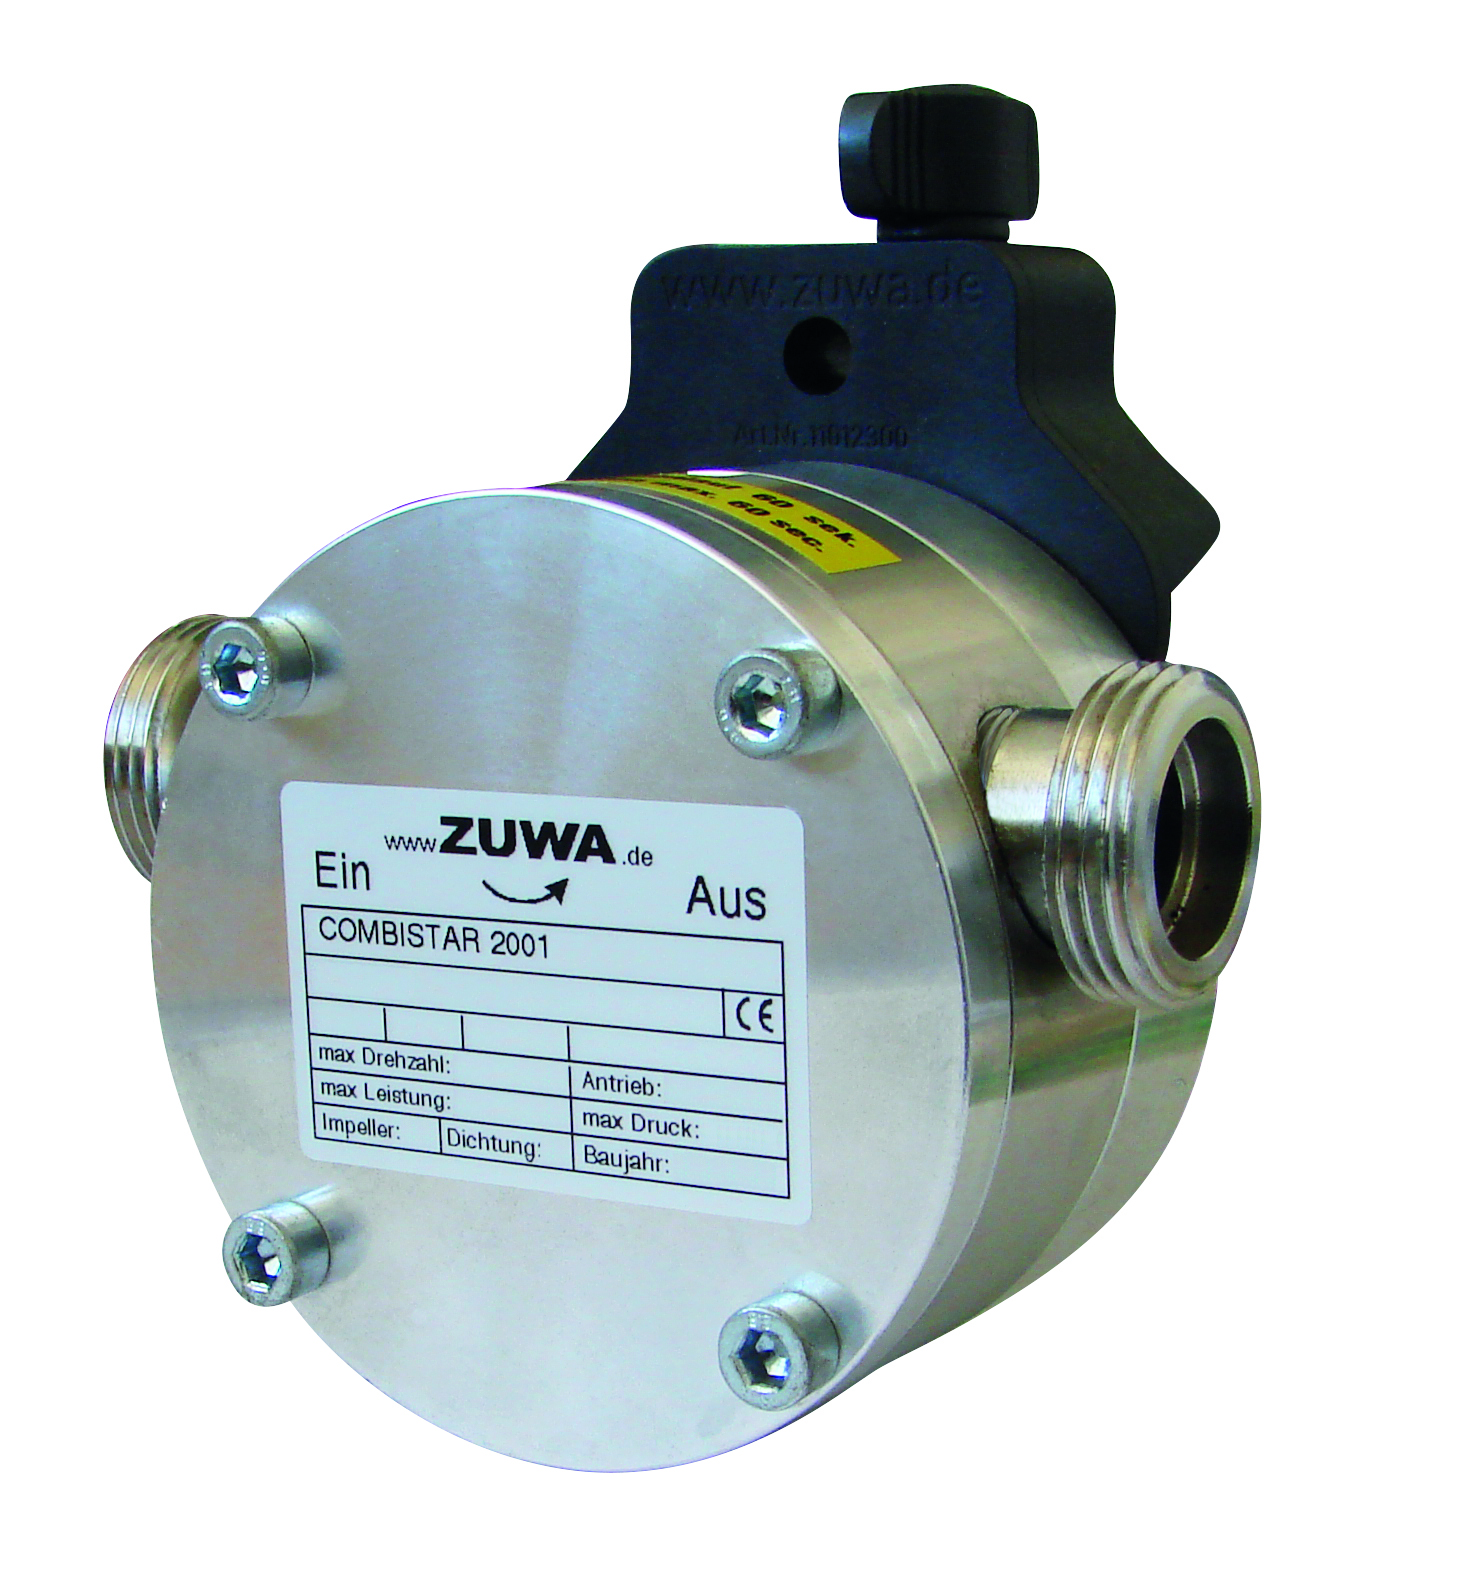 Zuwa Impellerpumpe COMBISTAR/K 2001-A, 30 l/min, Bohrmaschinenpumpe - 121911100AB